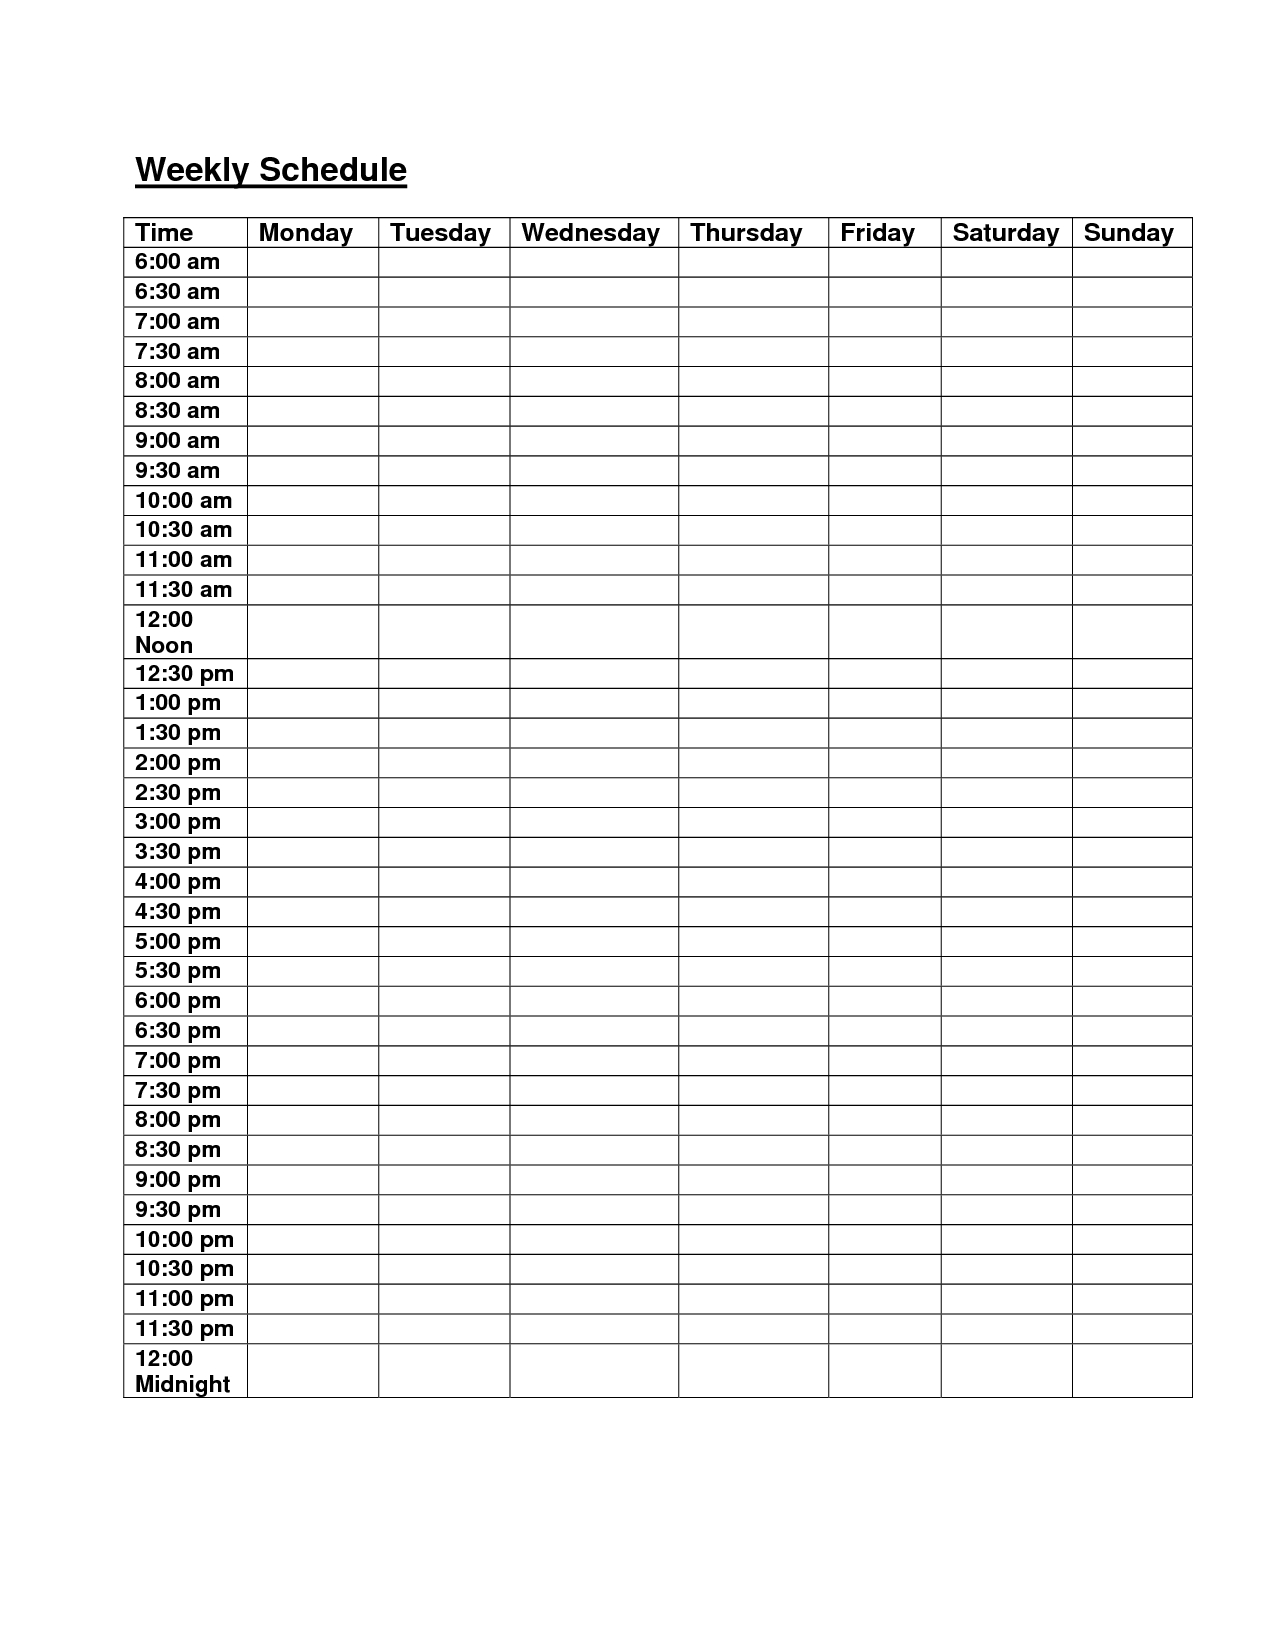 6am Midnight Hourly Weekly Schedule Planner | Schedule